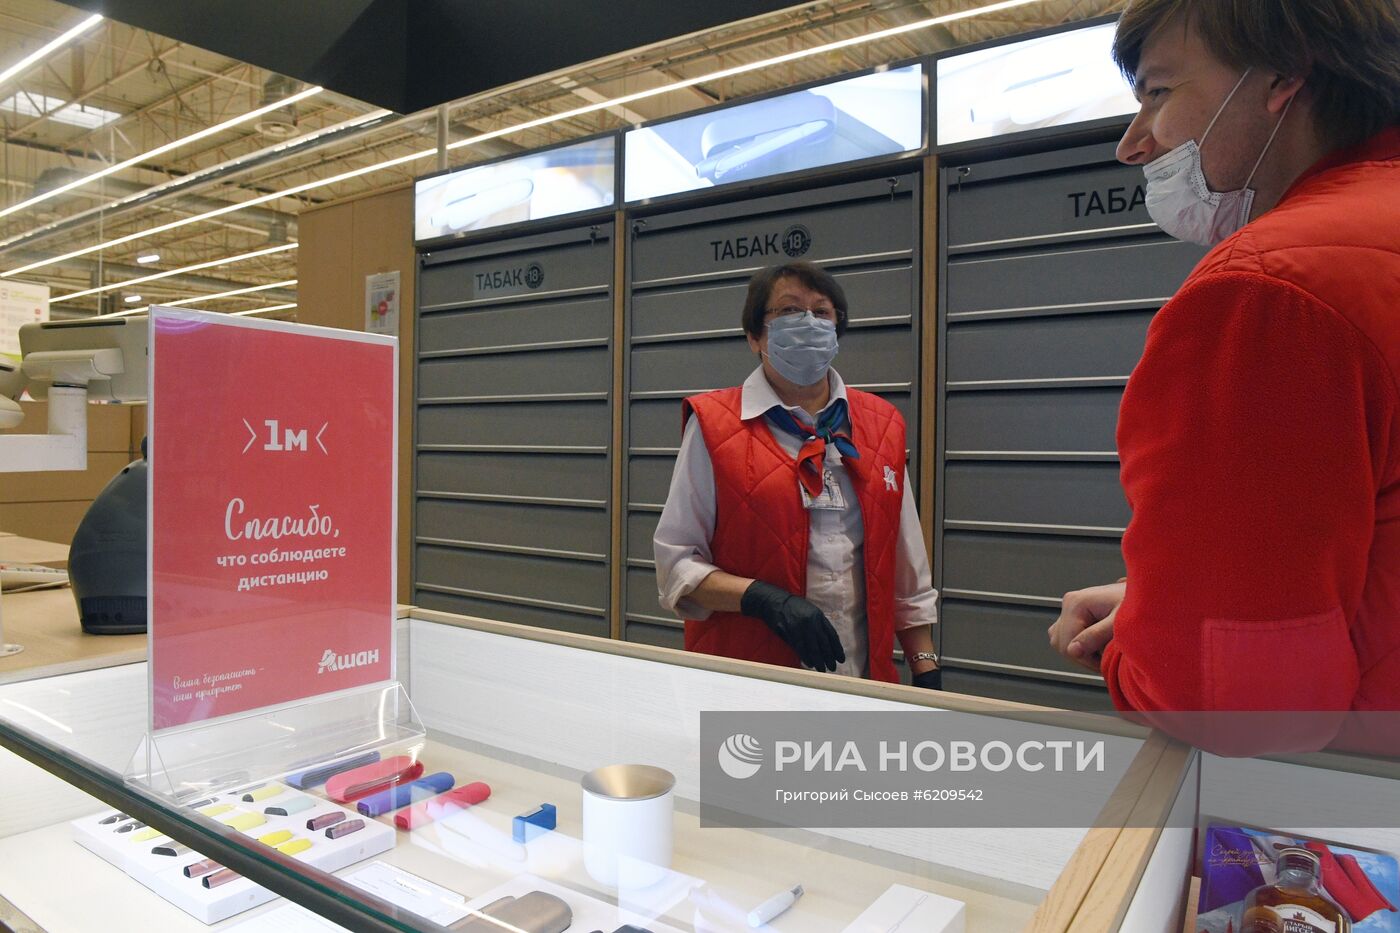 Разметка для соблюдения дистанции в связи с распространением коронавируса в Москве